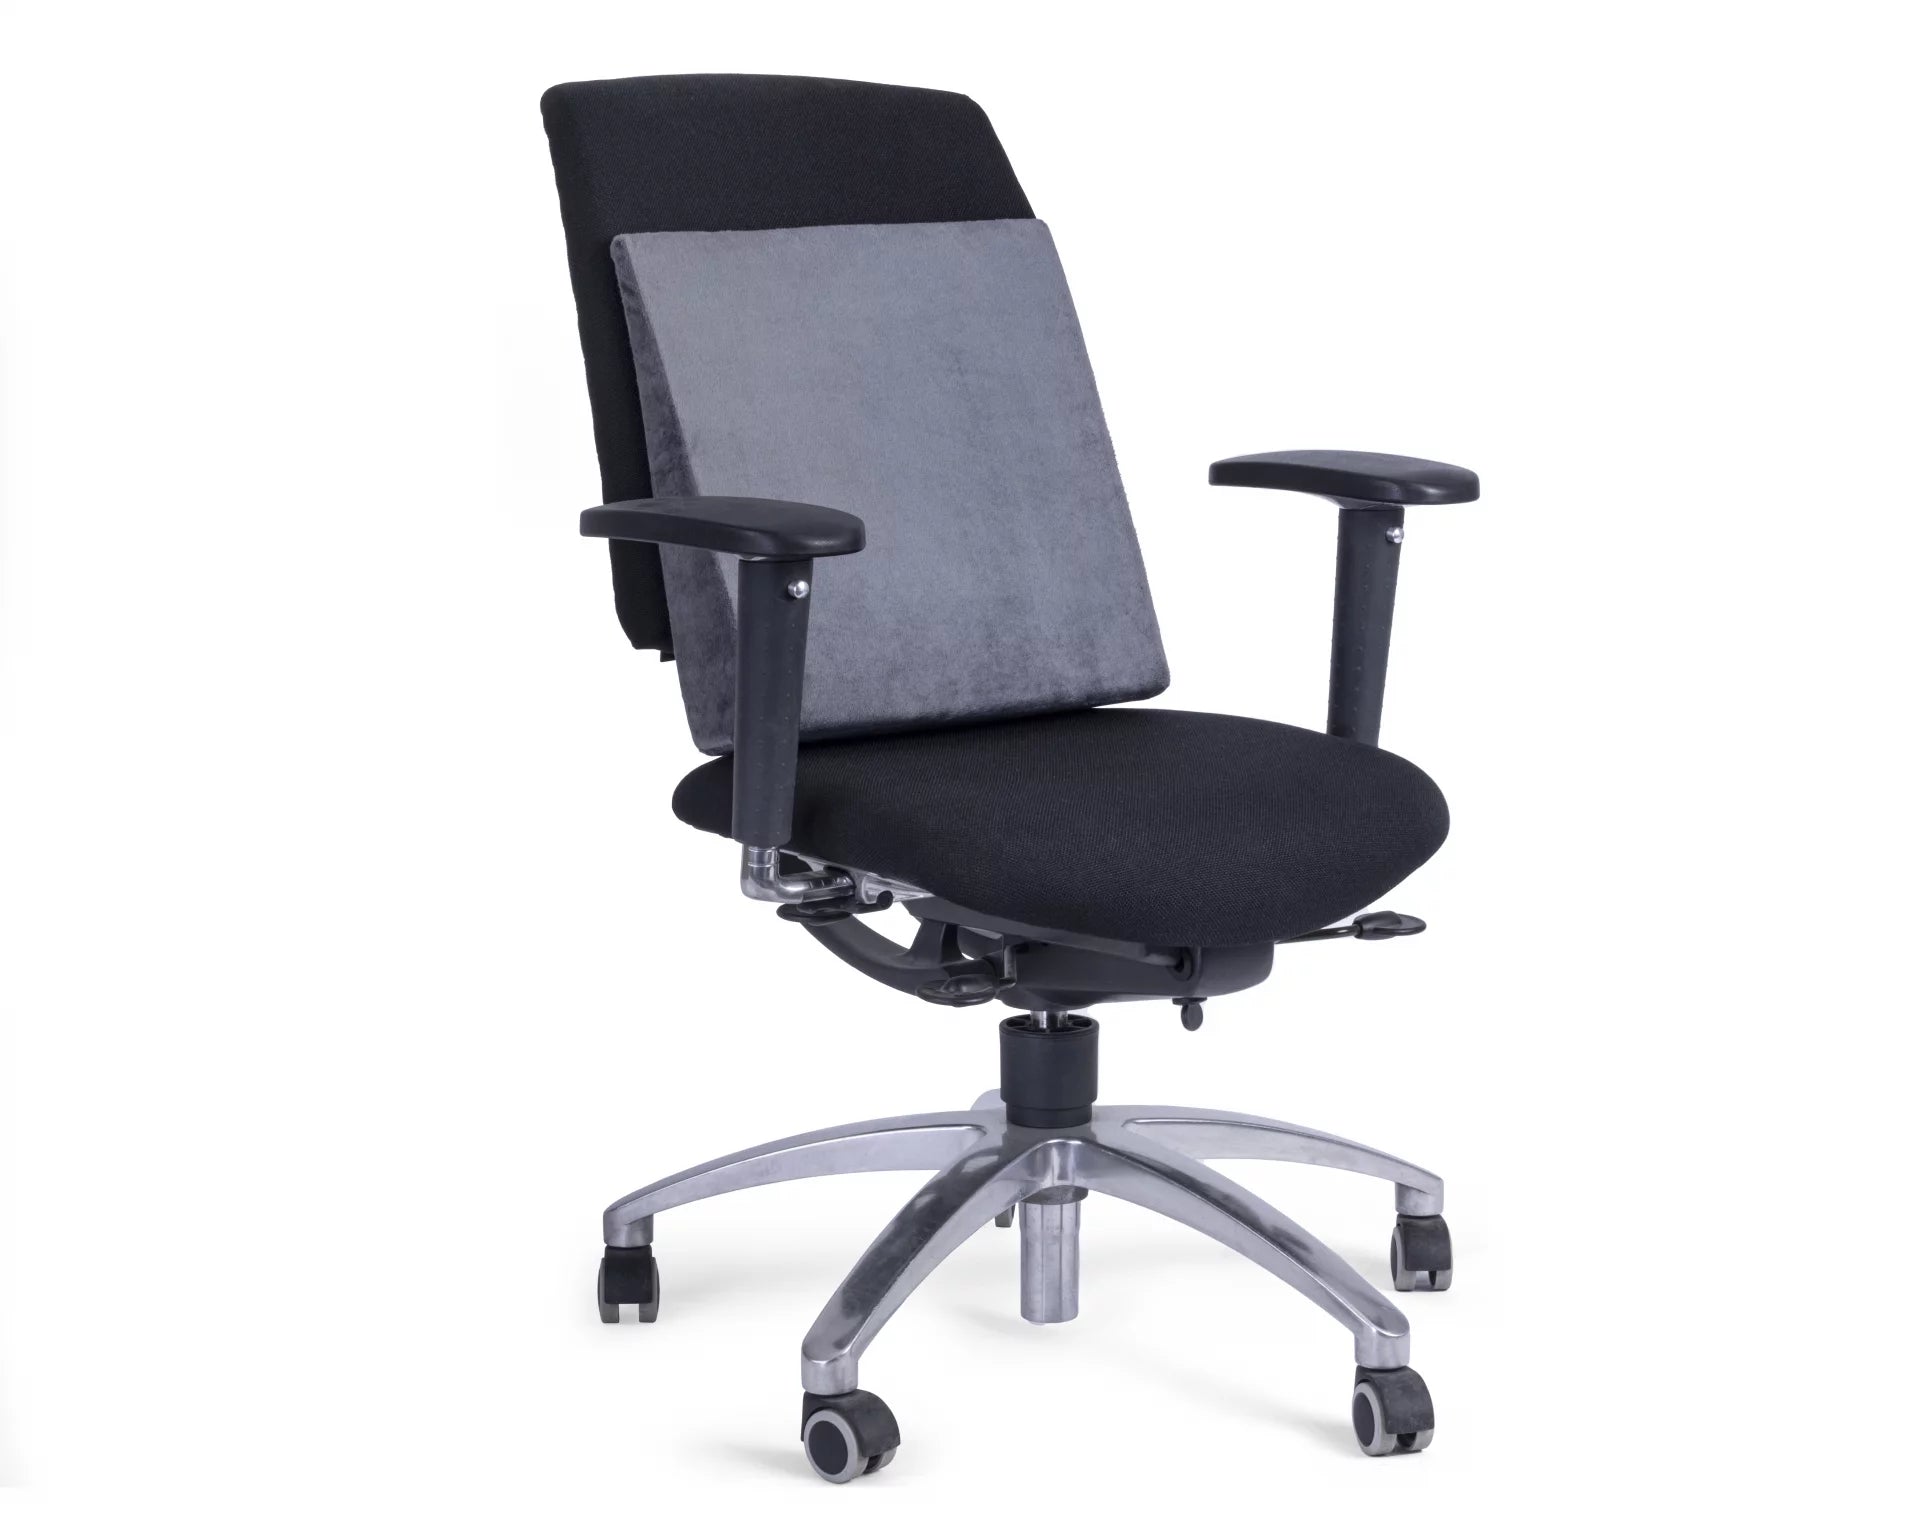 ergonomisch zit kussen bij rugpijn of zere rug zitkussen zitten met rugpijn prominent stoel